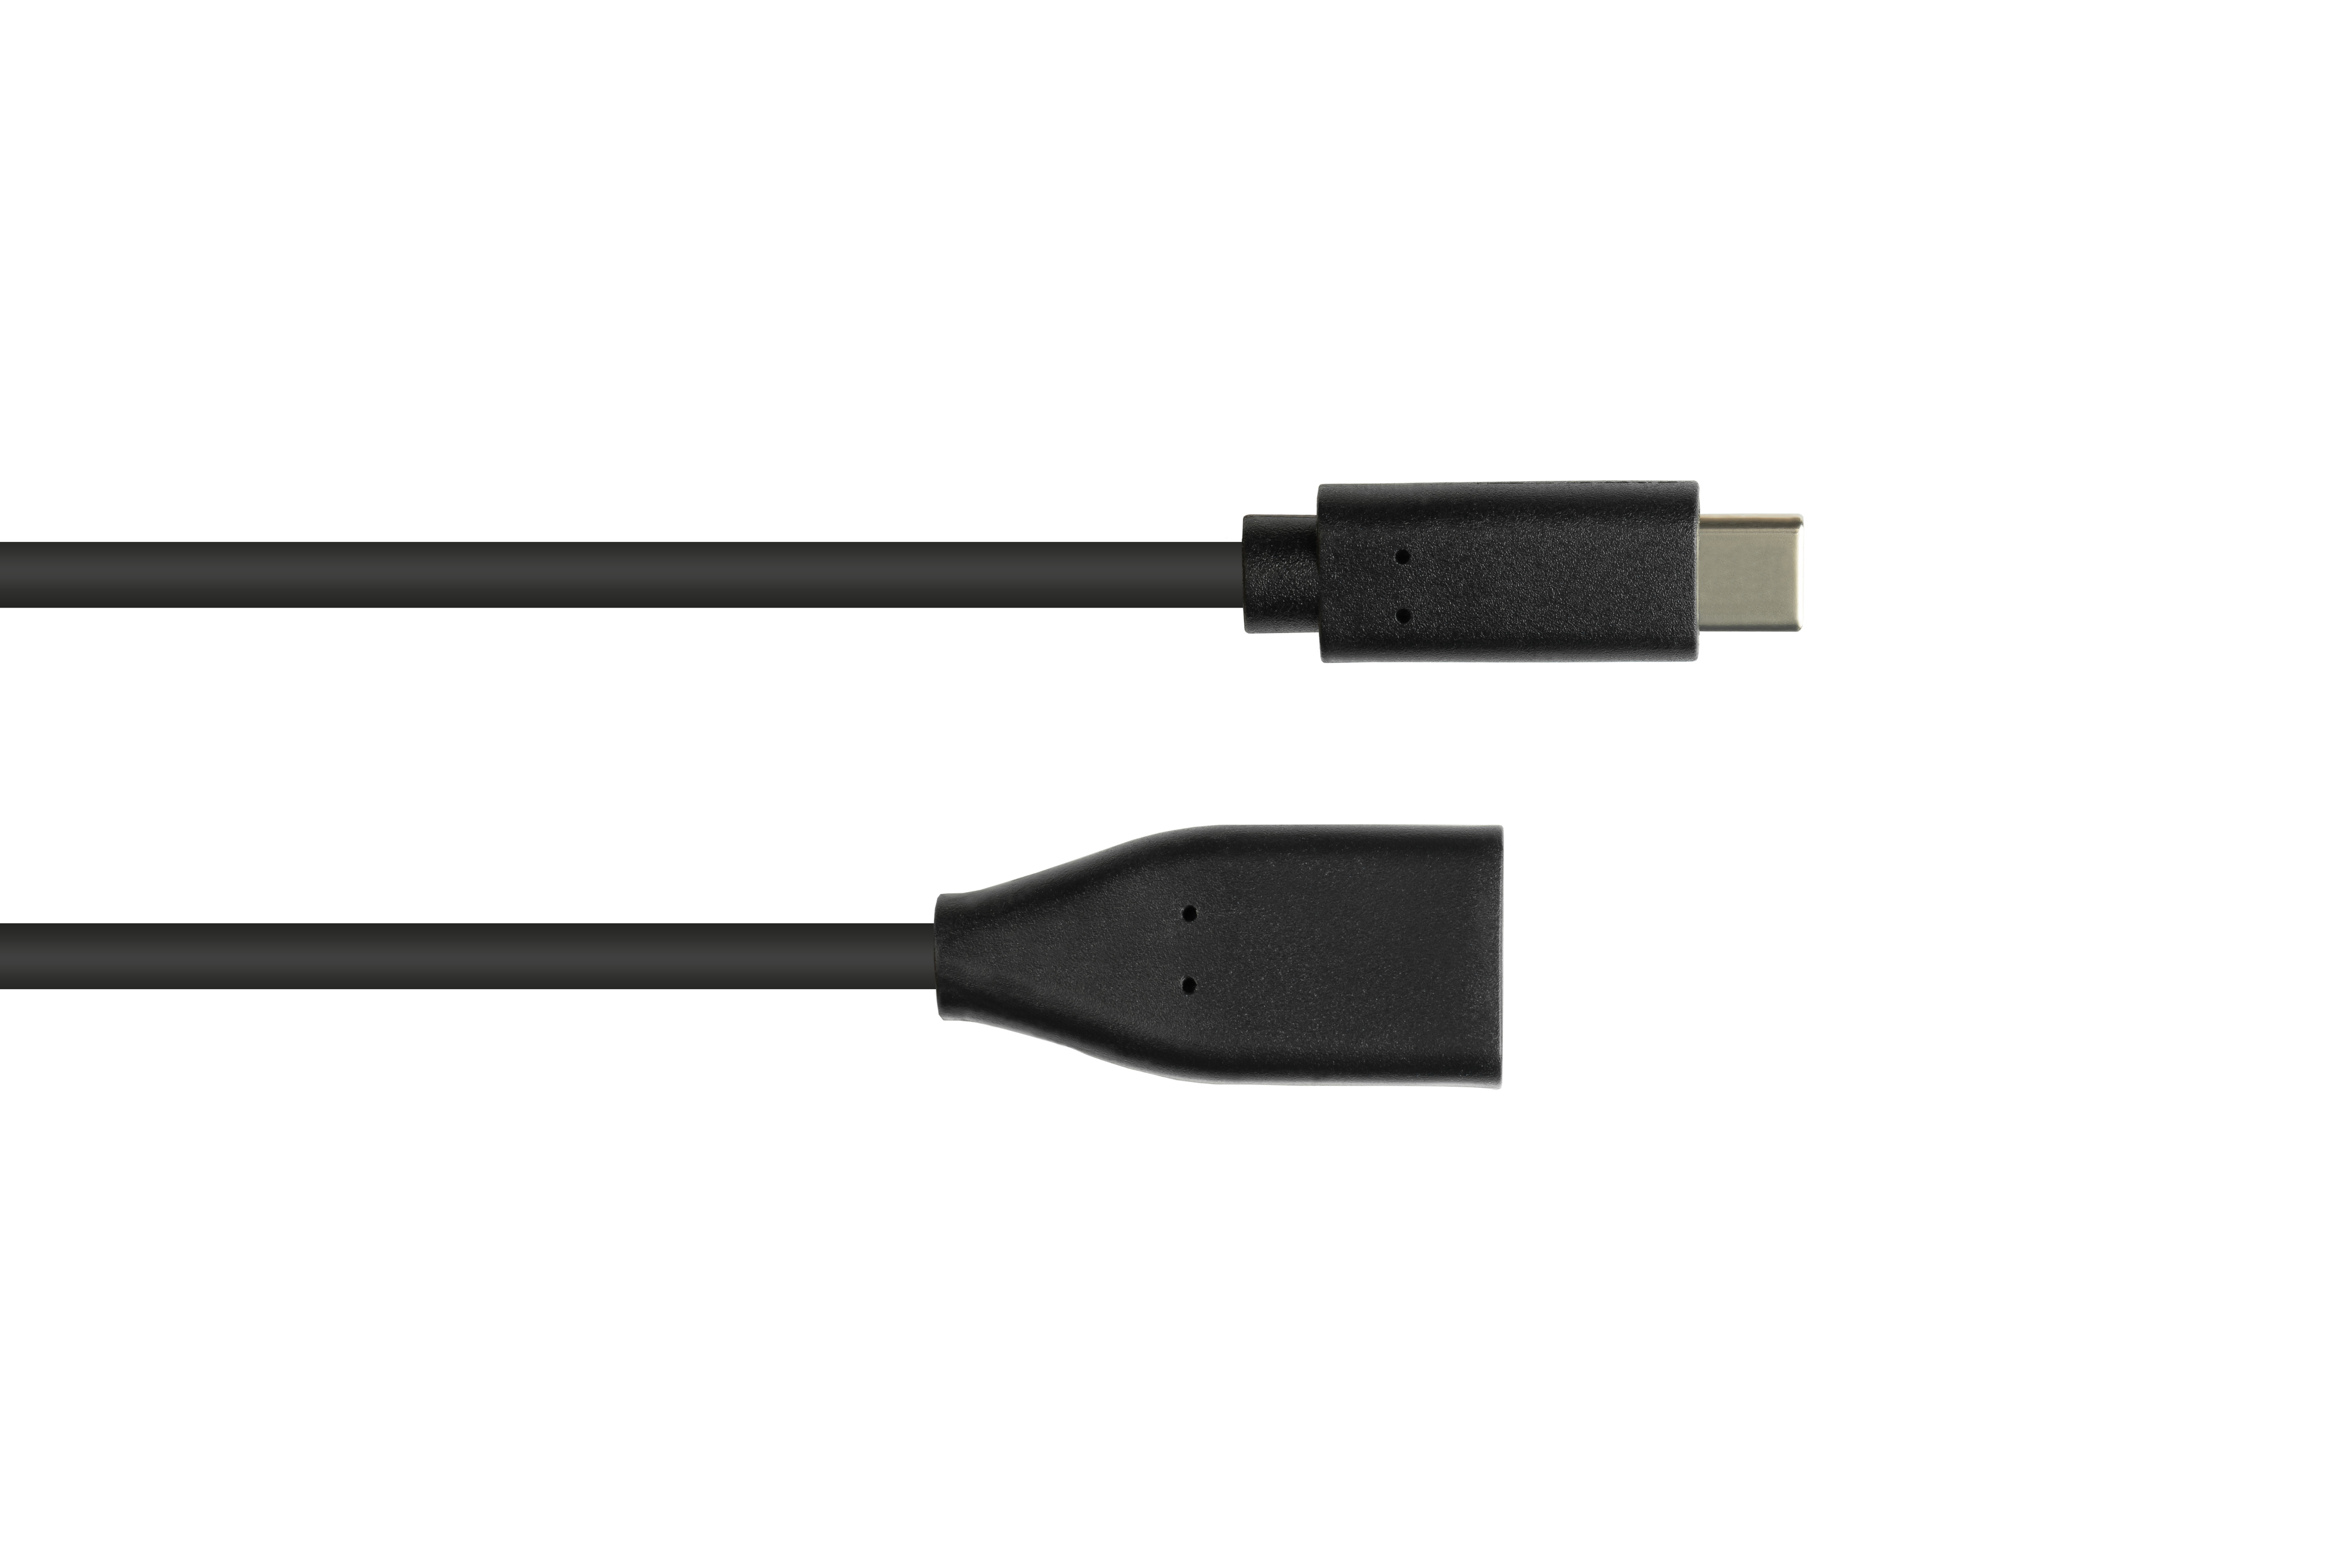 OTG Buchse, USB-C™ A USB Adapterkabel (On-the-go), 2.0 KABELMEISTER an Stecker schwarz USB